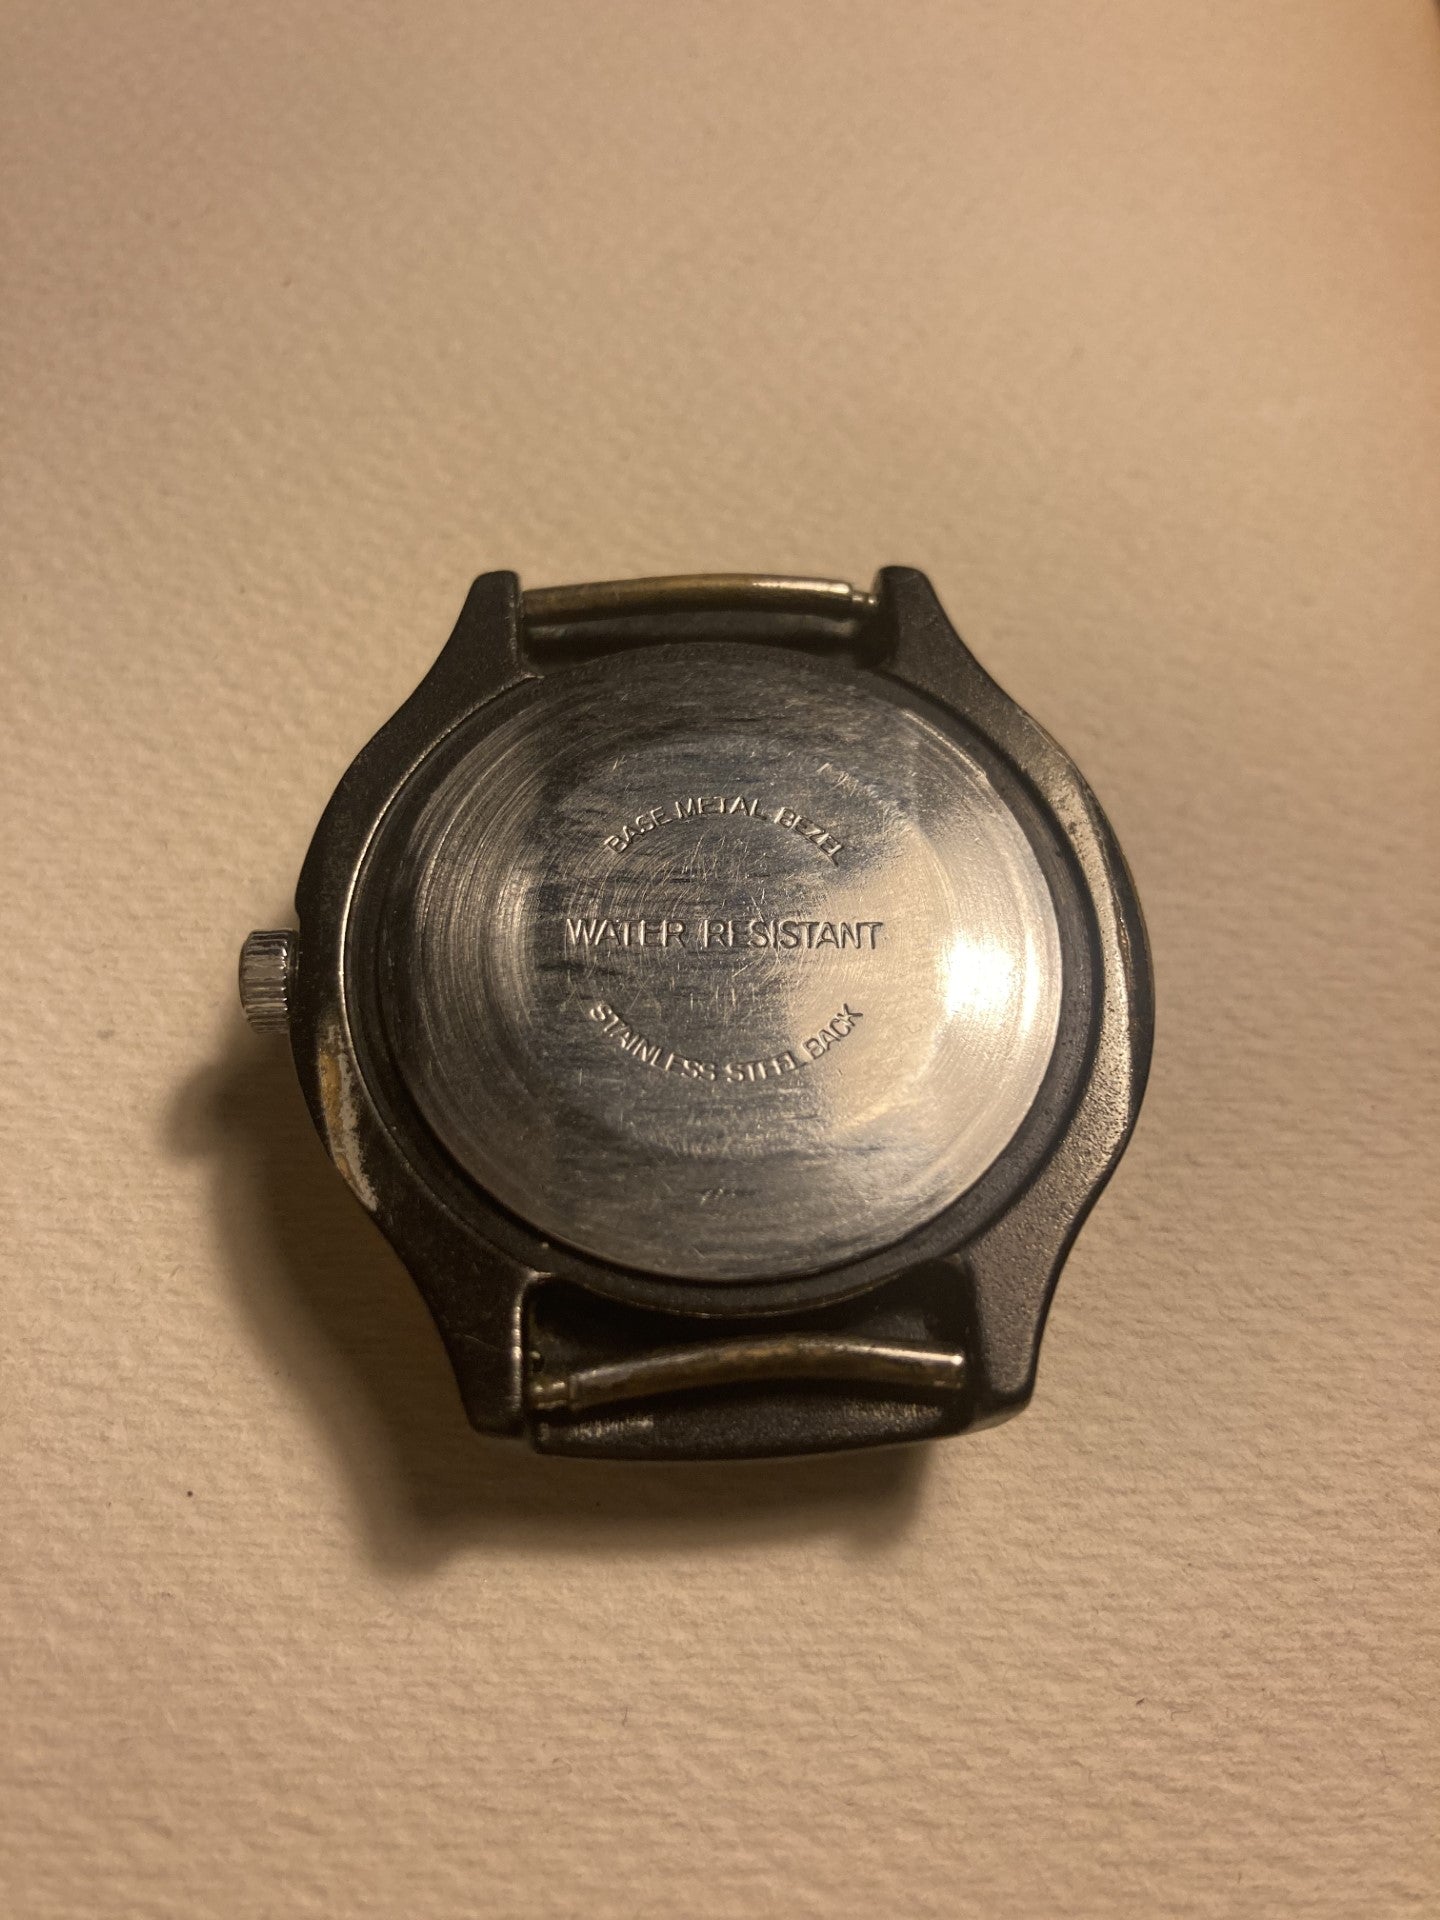 Vintage Timex Tachometer, mekanisk urværk - nr. 01052